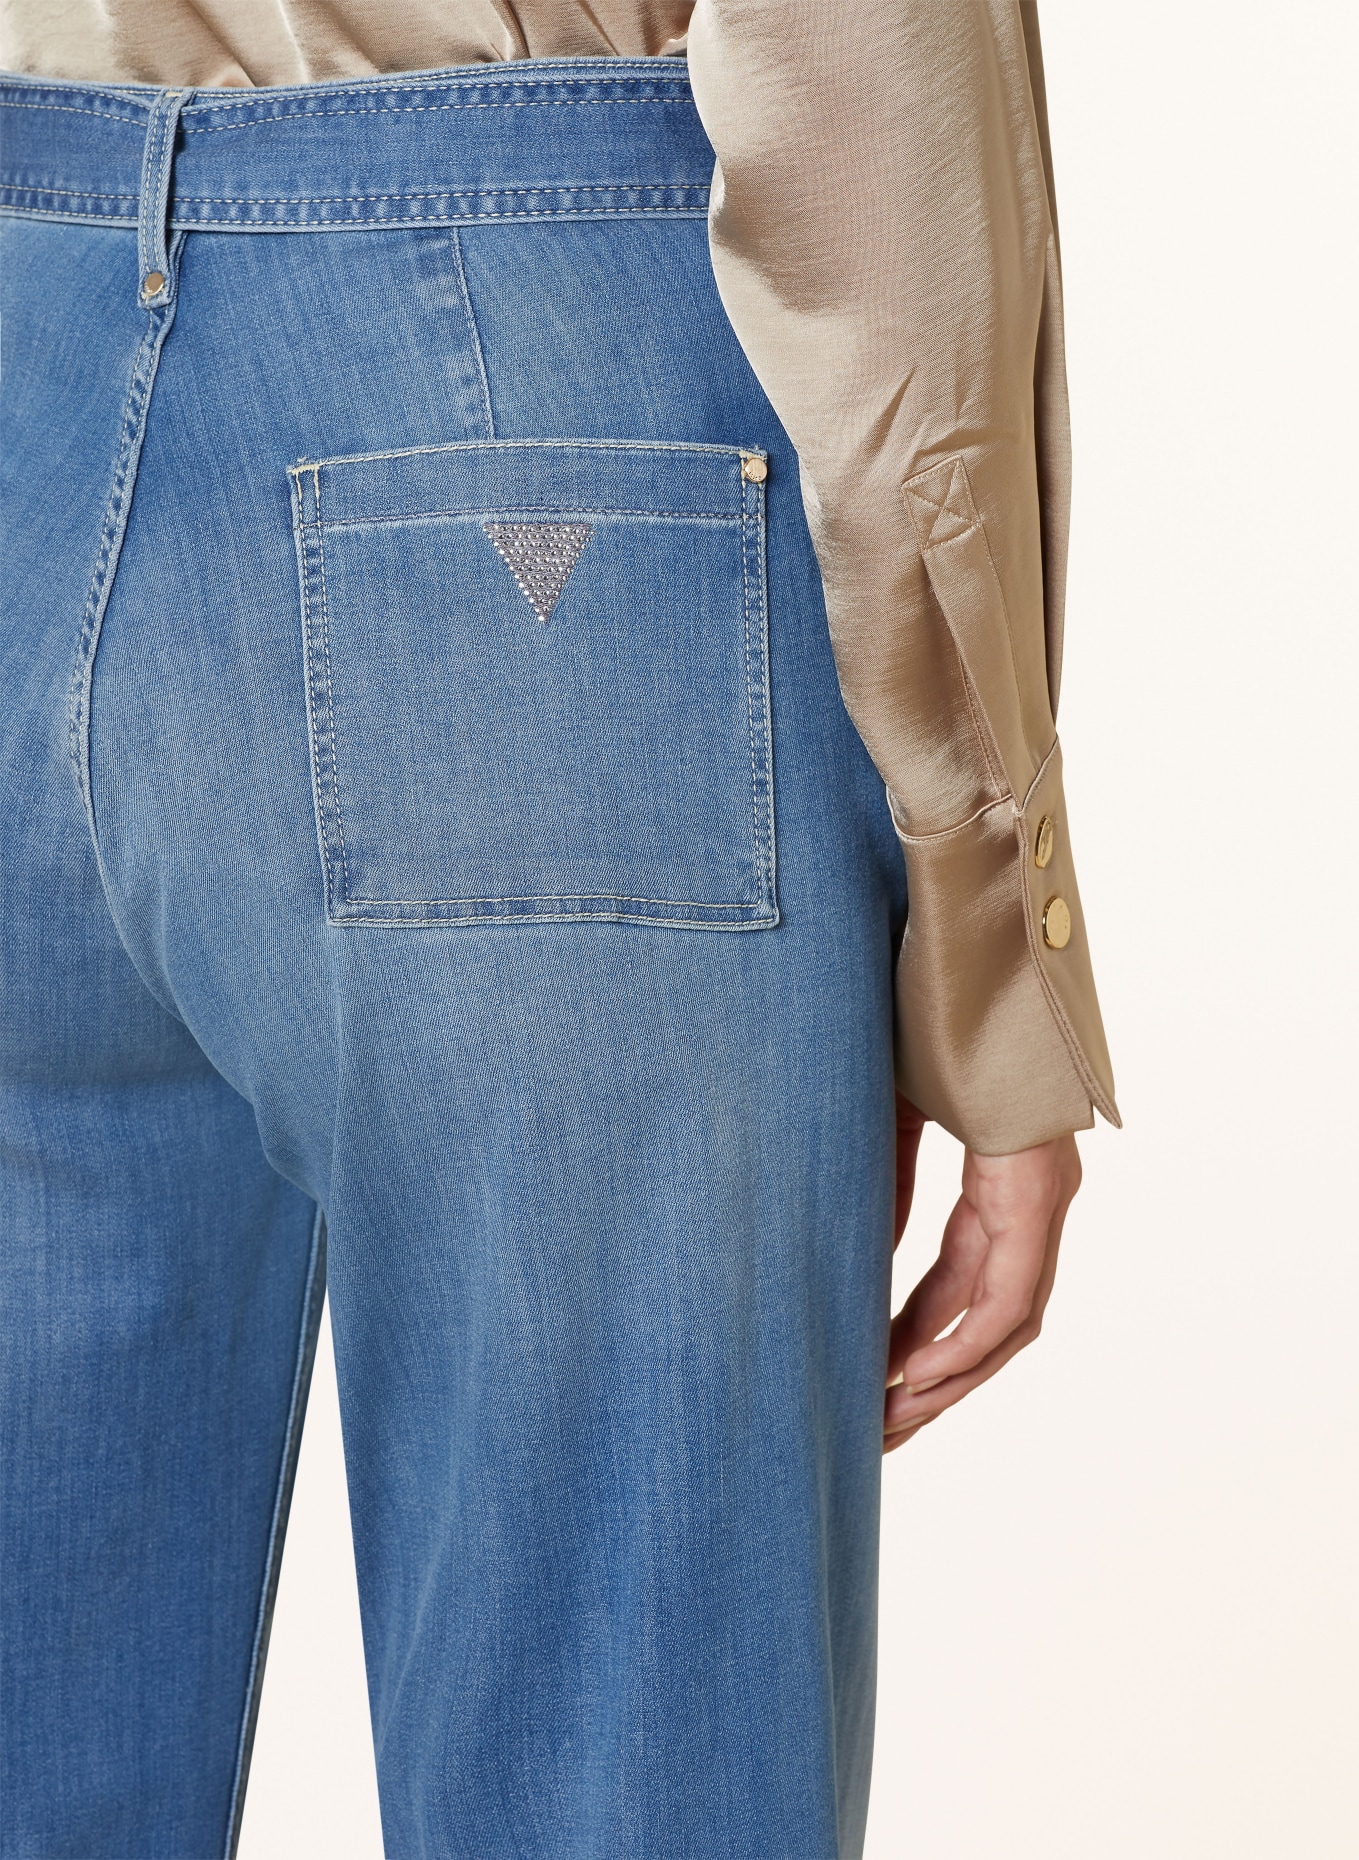 GUESS Culotte jeans DAKOTA, Color: EAMD EAU MID (Image 5)